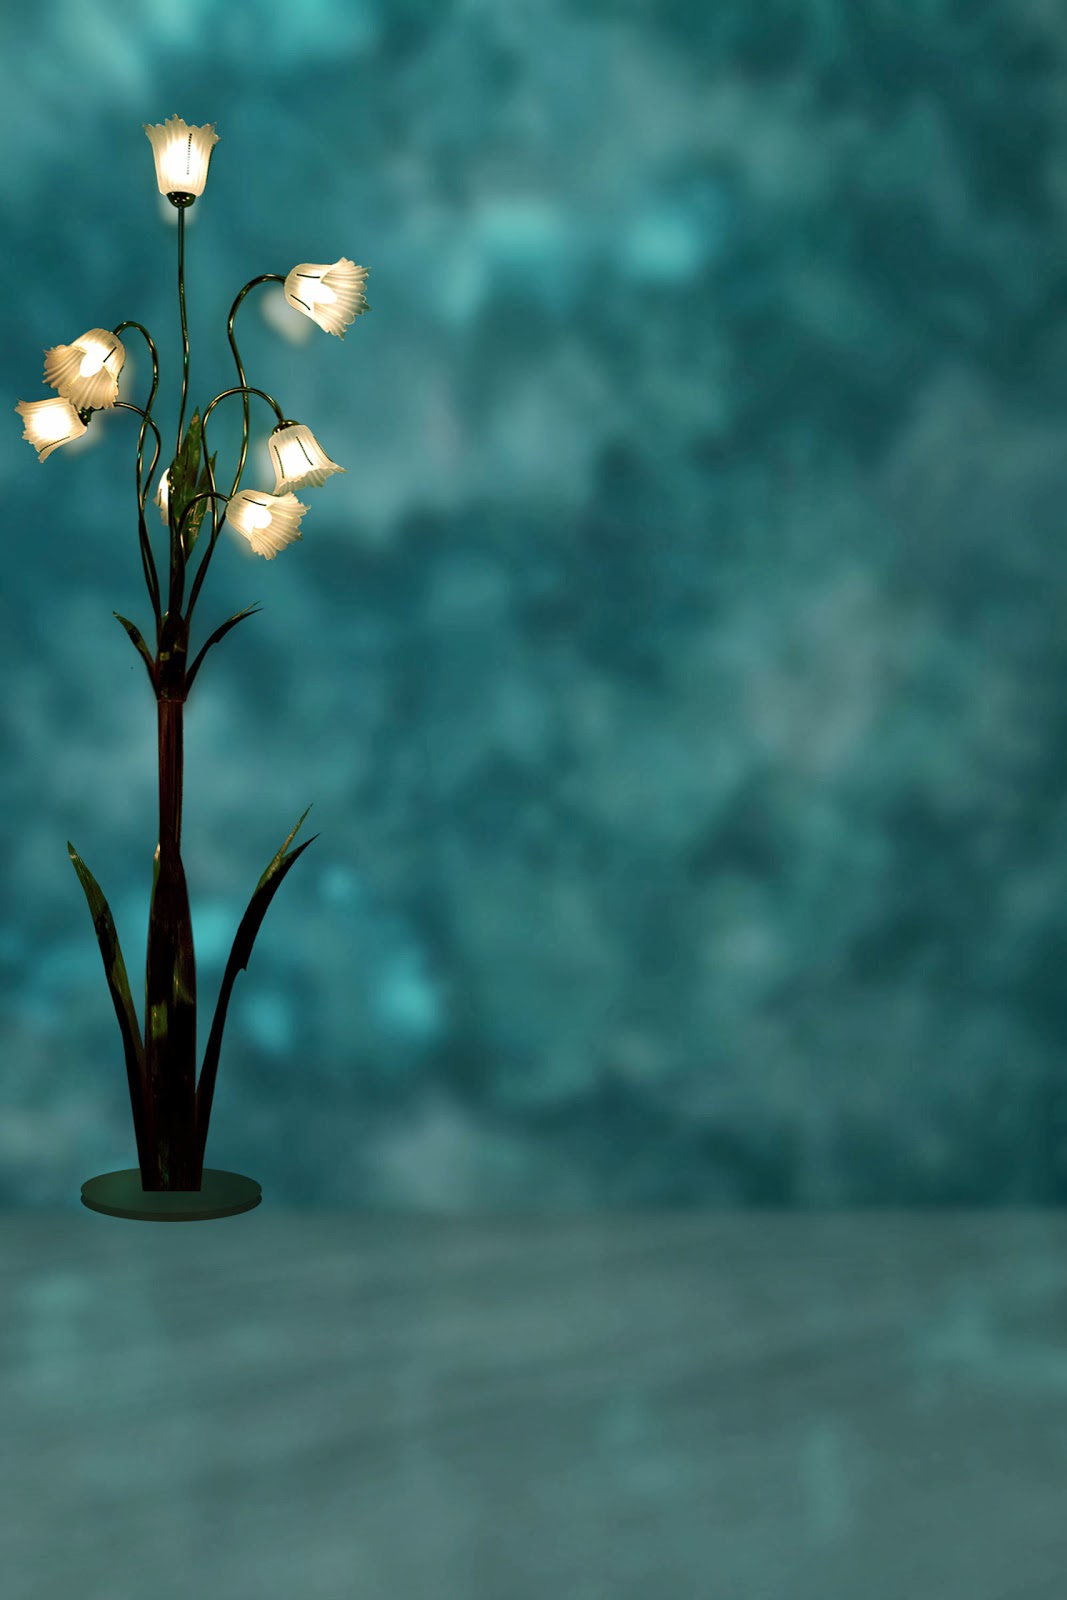 sfondo per photoshop,blu,turchese,pianta,fiore,fotografia di still life